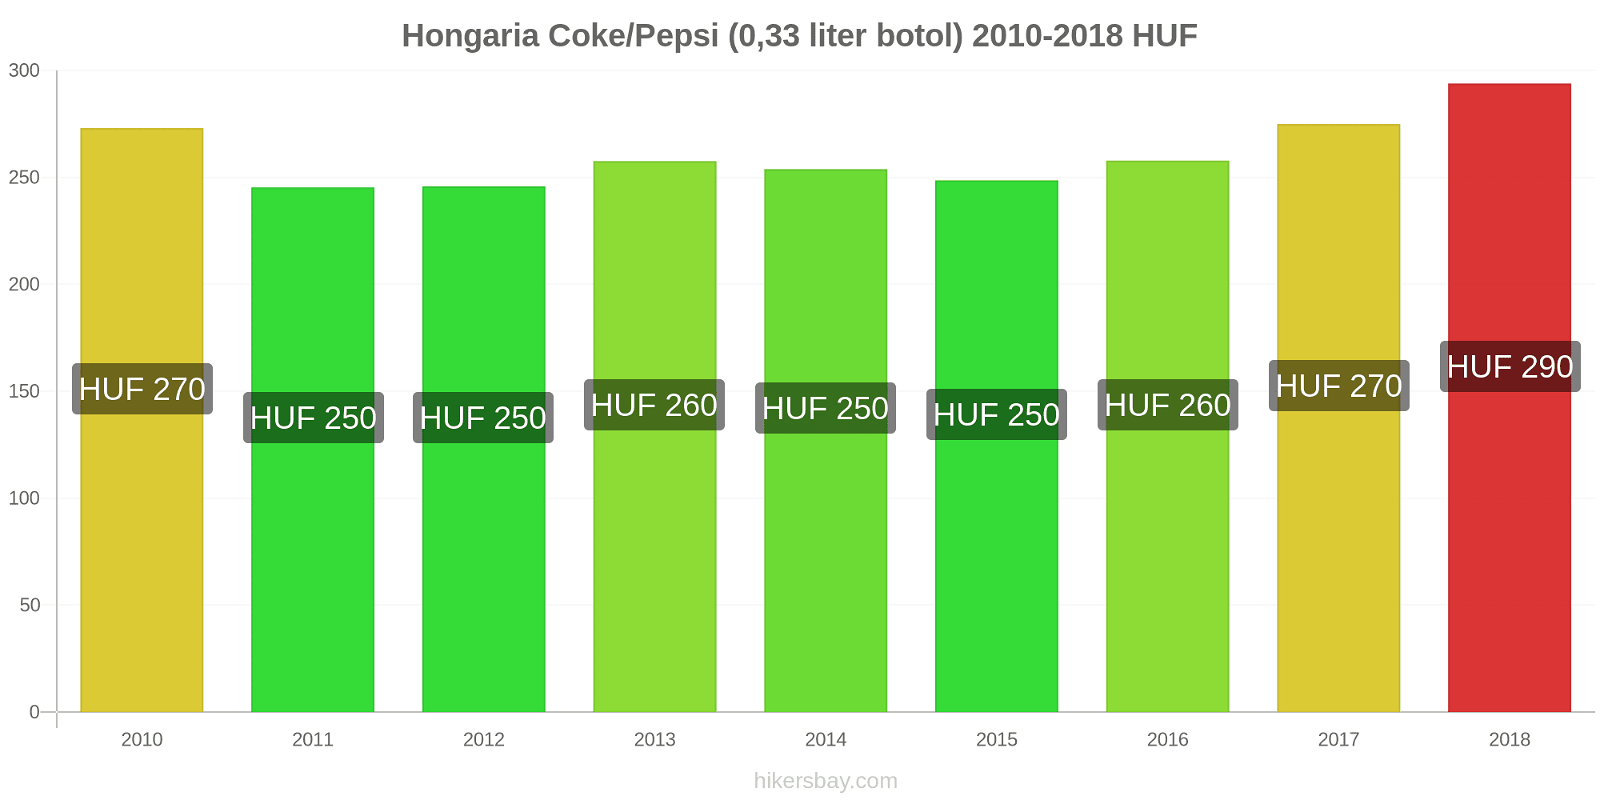 Hongaria perubahan harga Coca-Cola/Pepsi (botol 0.33 liter) hikersbay.com